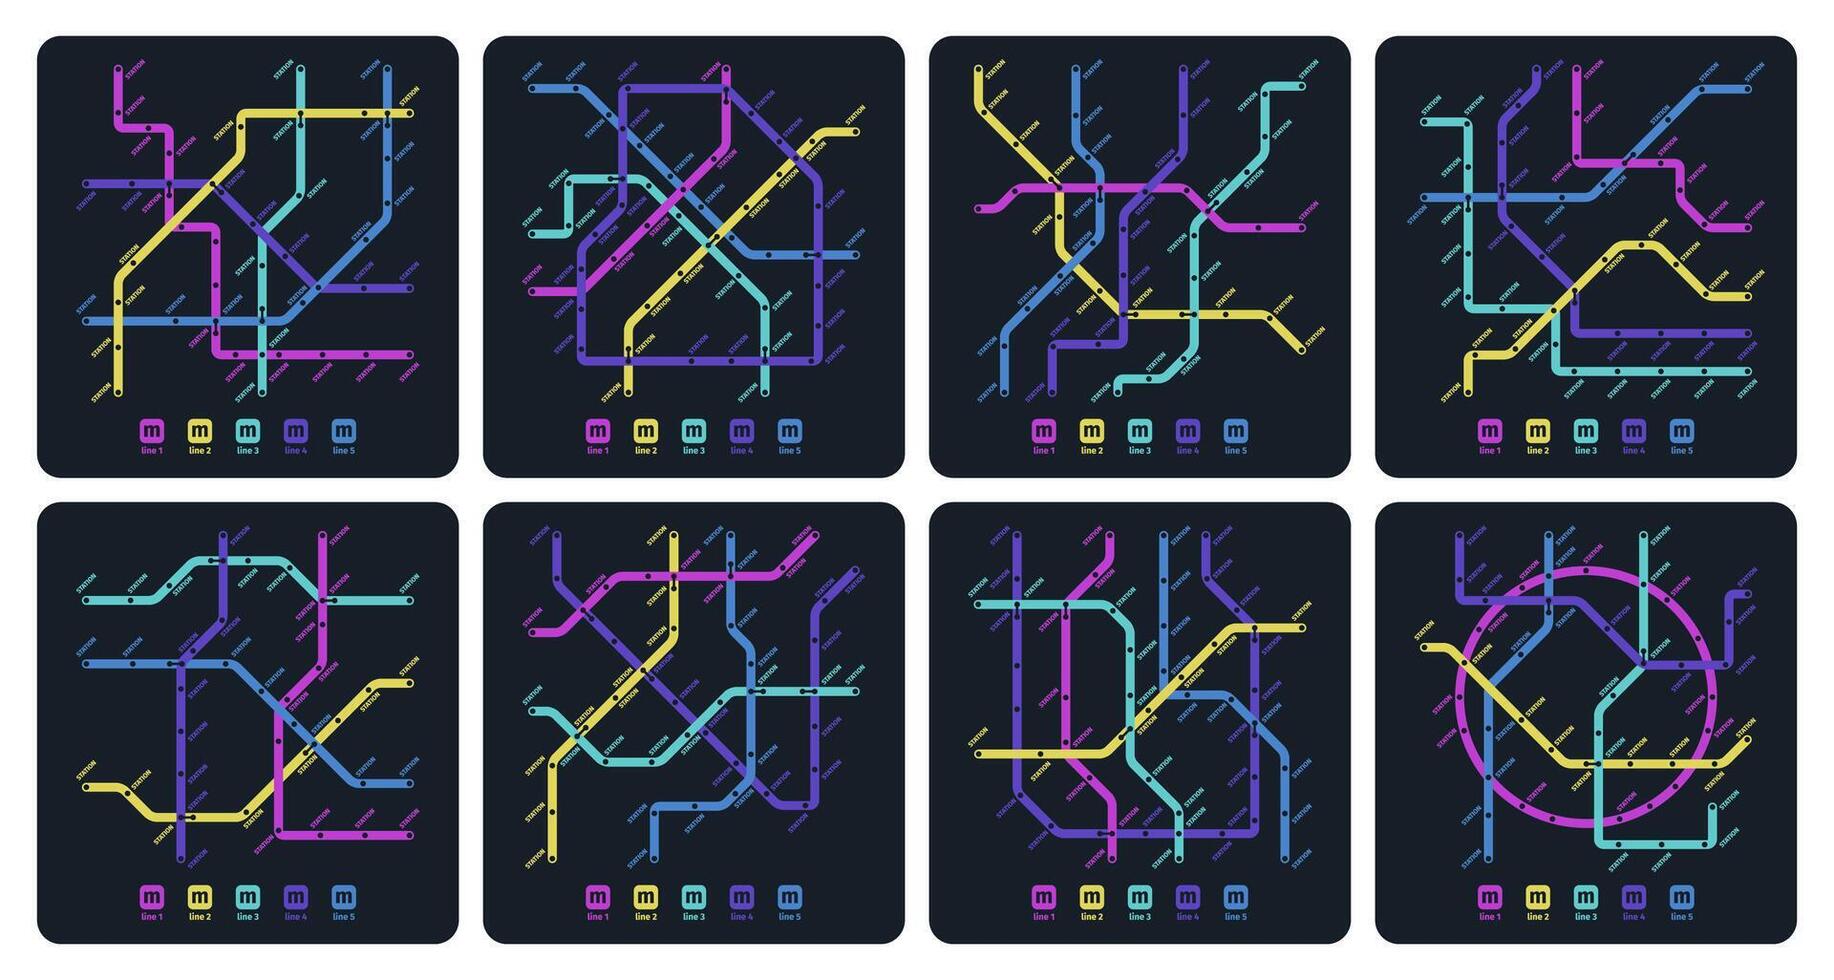 subterraneo oscuro mapa. subterráneo metro estación subterraneo mapa con ruta dirección y número de trenes vector subterraneo subterráneo estación mapa